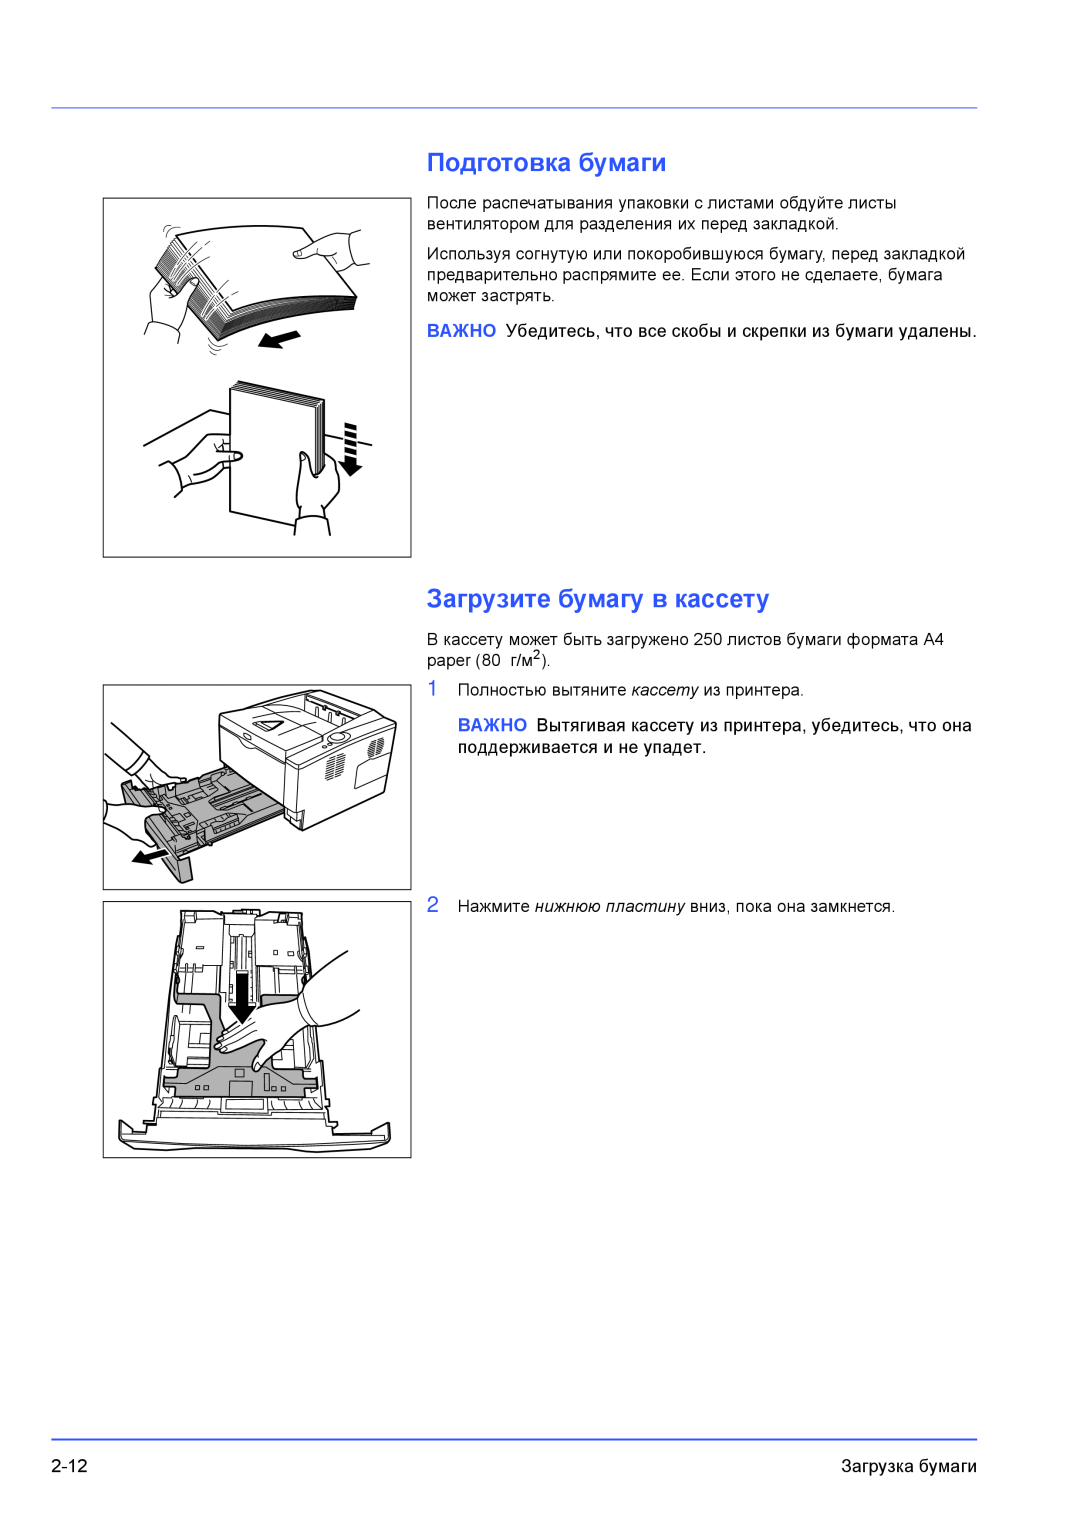 Kyocera FS-1300D, FS-1100 manual Подготовка бумаги, Загрузите бумагу в кассету 